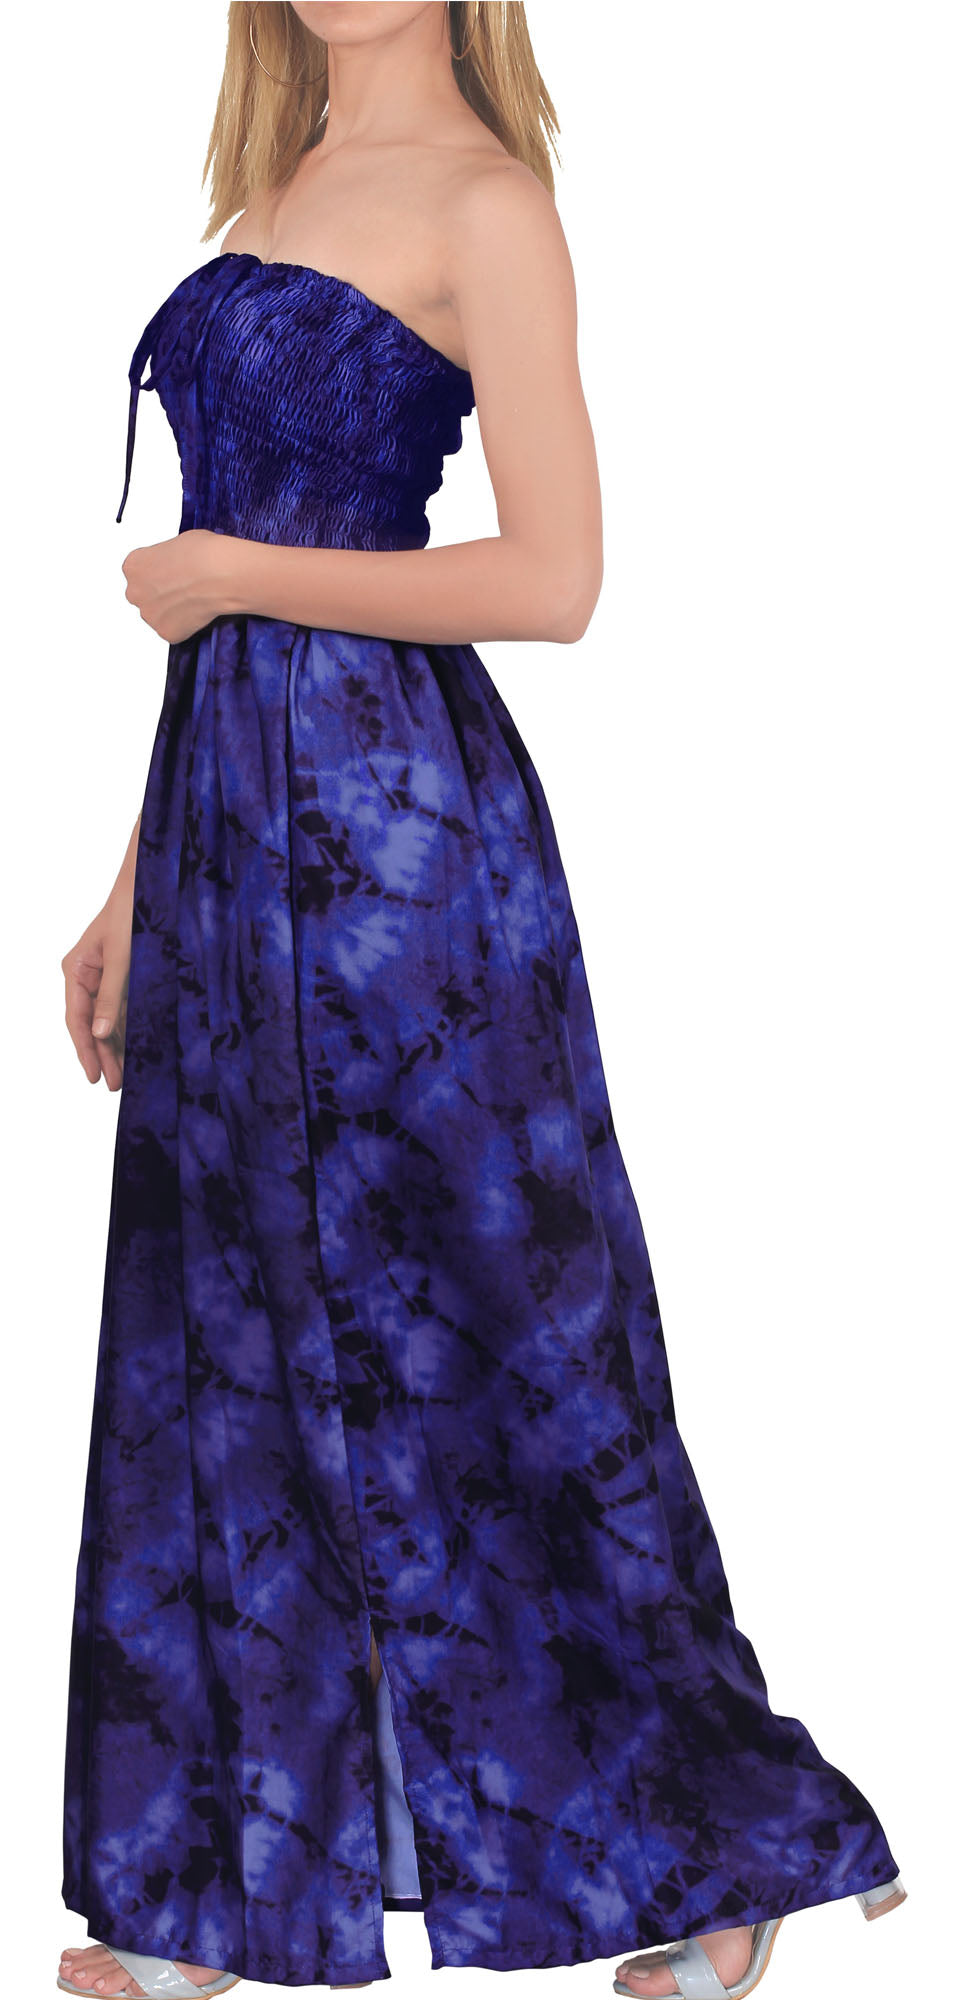 Rosette Tiedye Maxi Dress for women